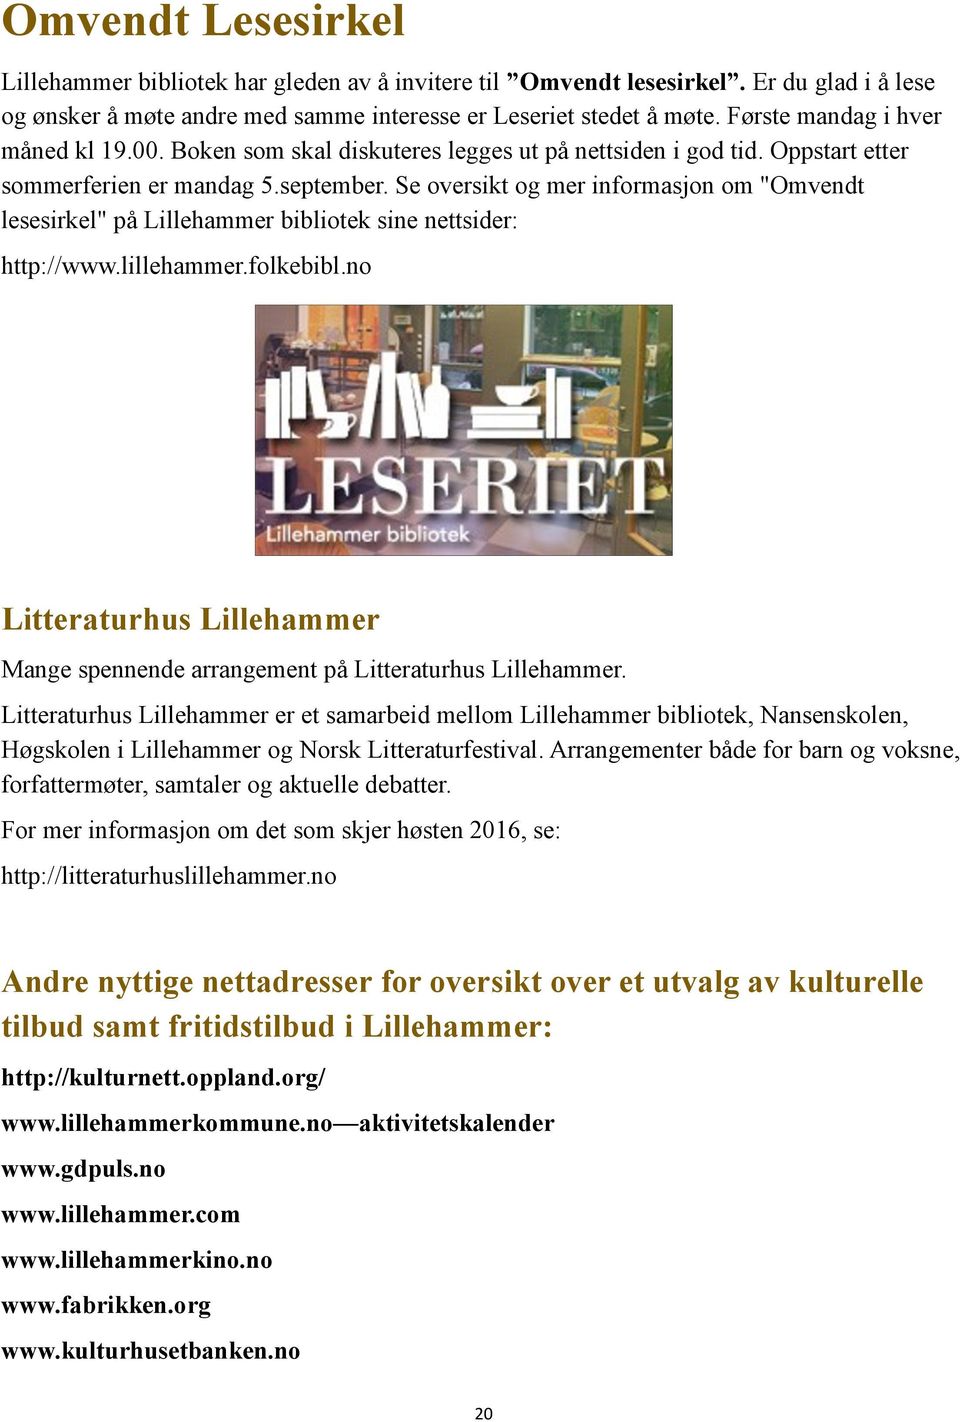 Se oversikt og mer informasjon om "Omvendt lesesirkel" på Lillehammer bibliotek sine nettsider: http://www.lillehammer.folkebibl.